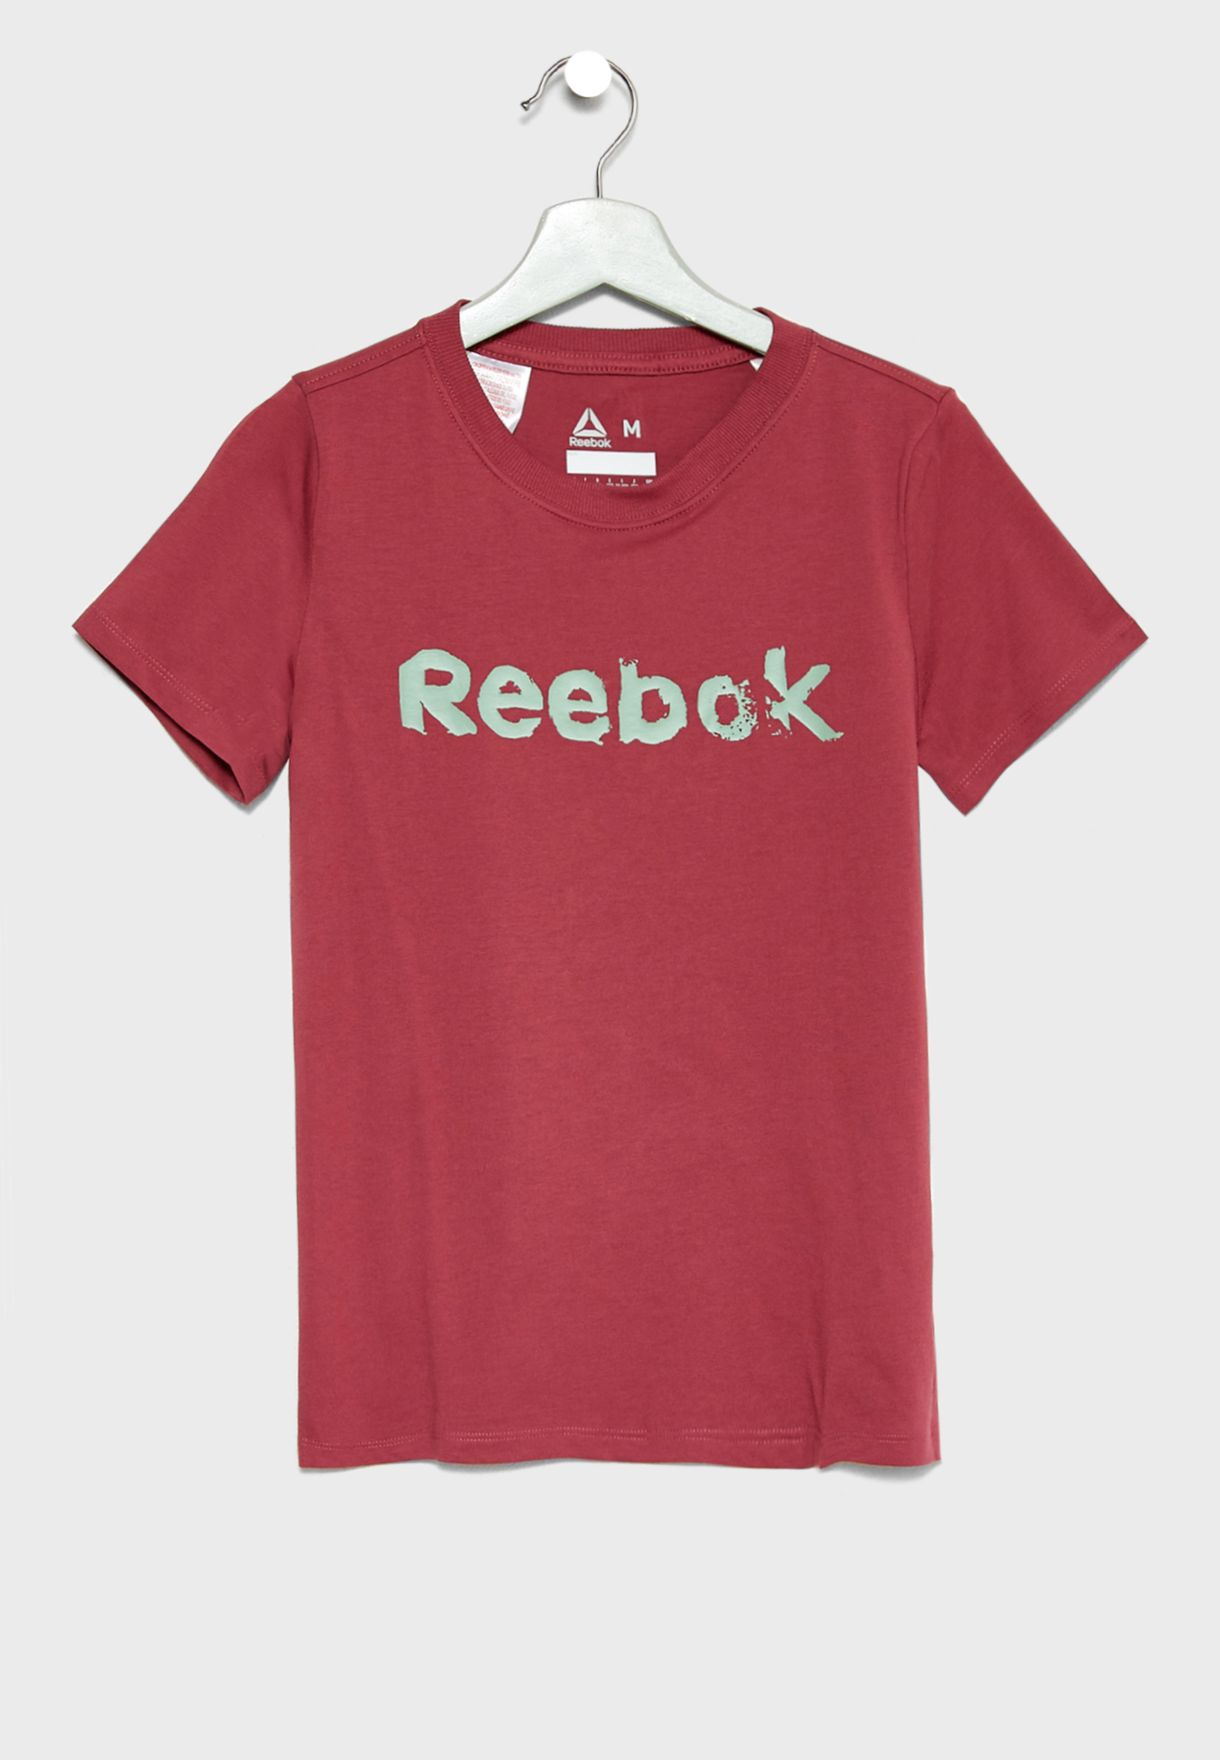 reebok elements t shirt